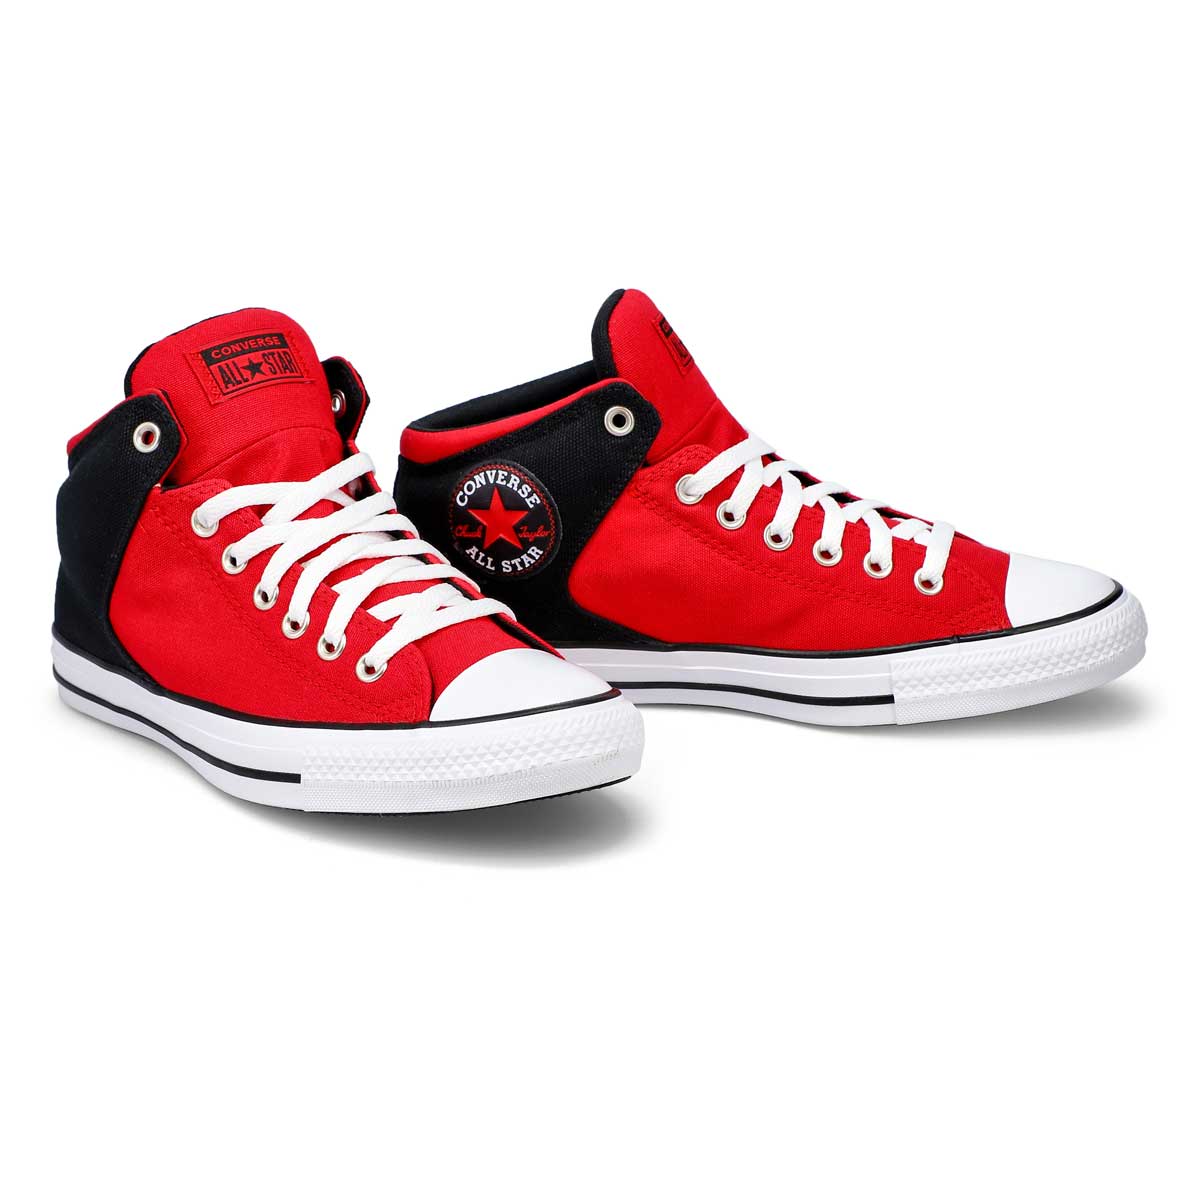 Men's All Star High Street Sneaker - Red/Black